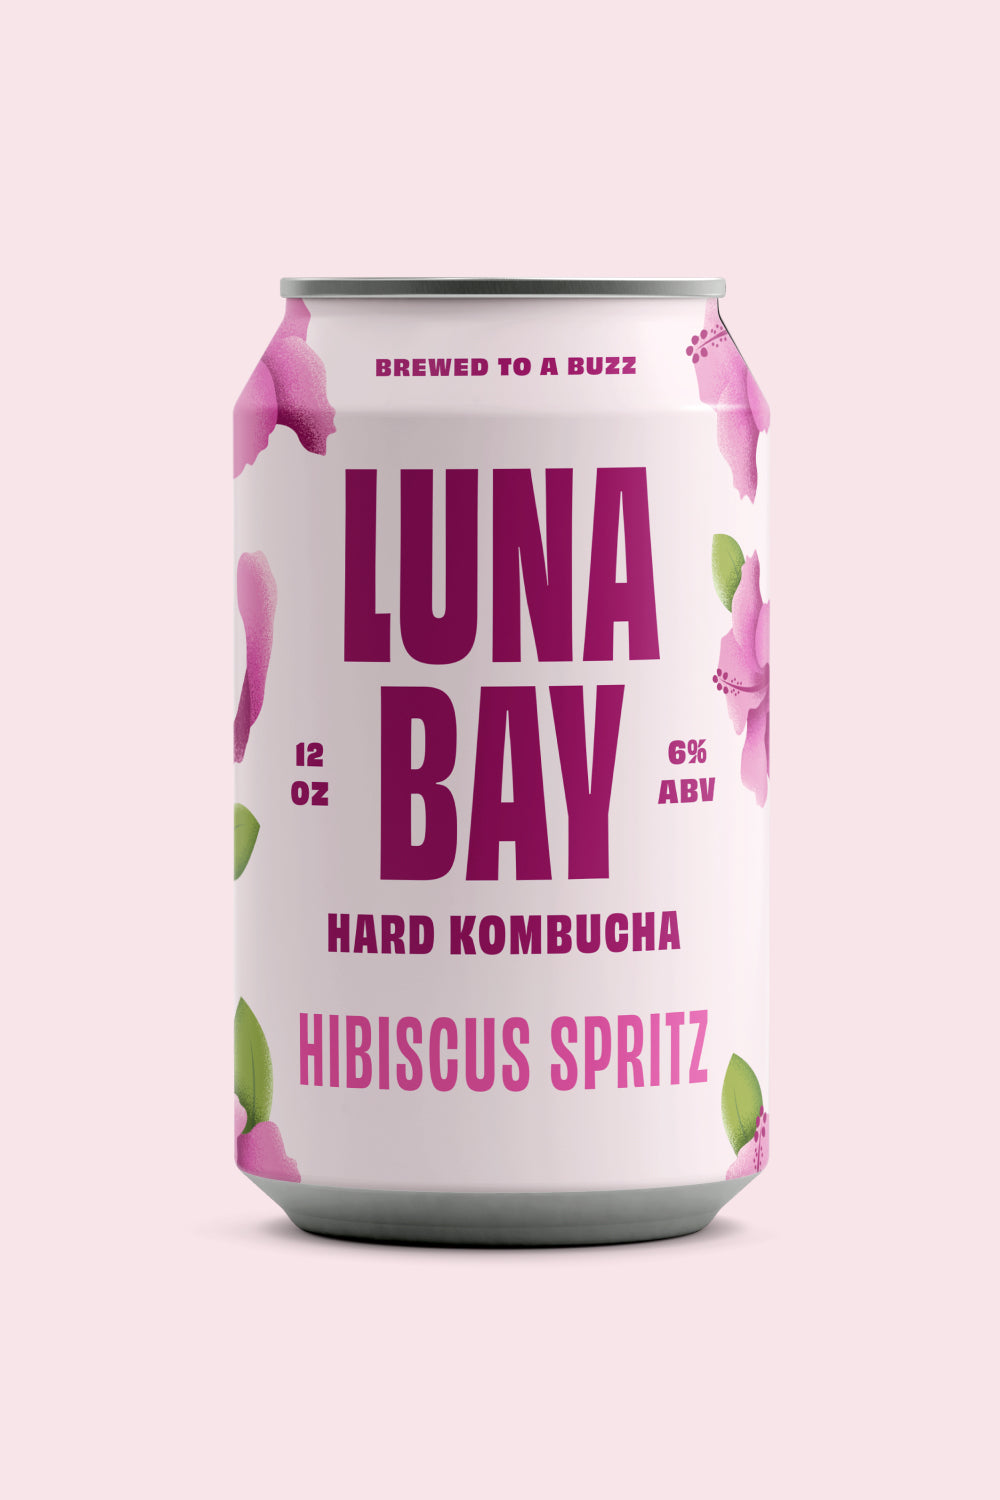 hard-kombucha-hibiscus-spritz.jpg